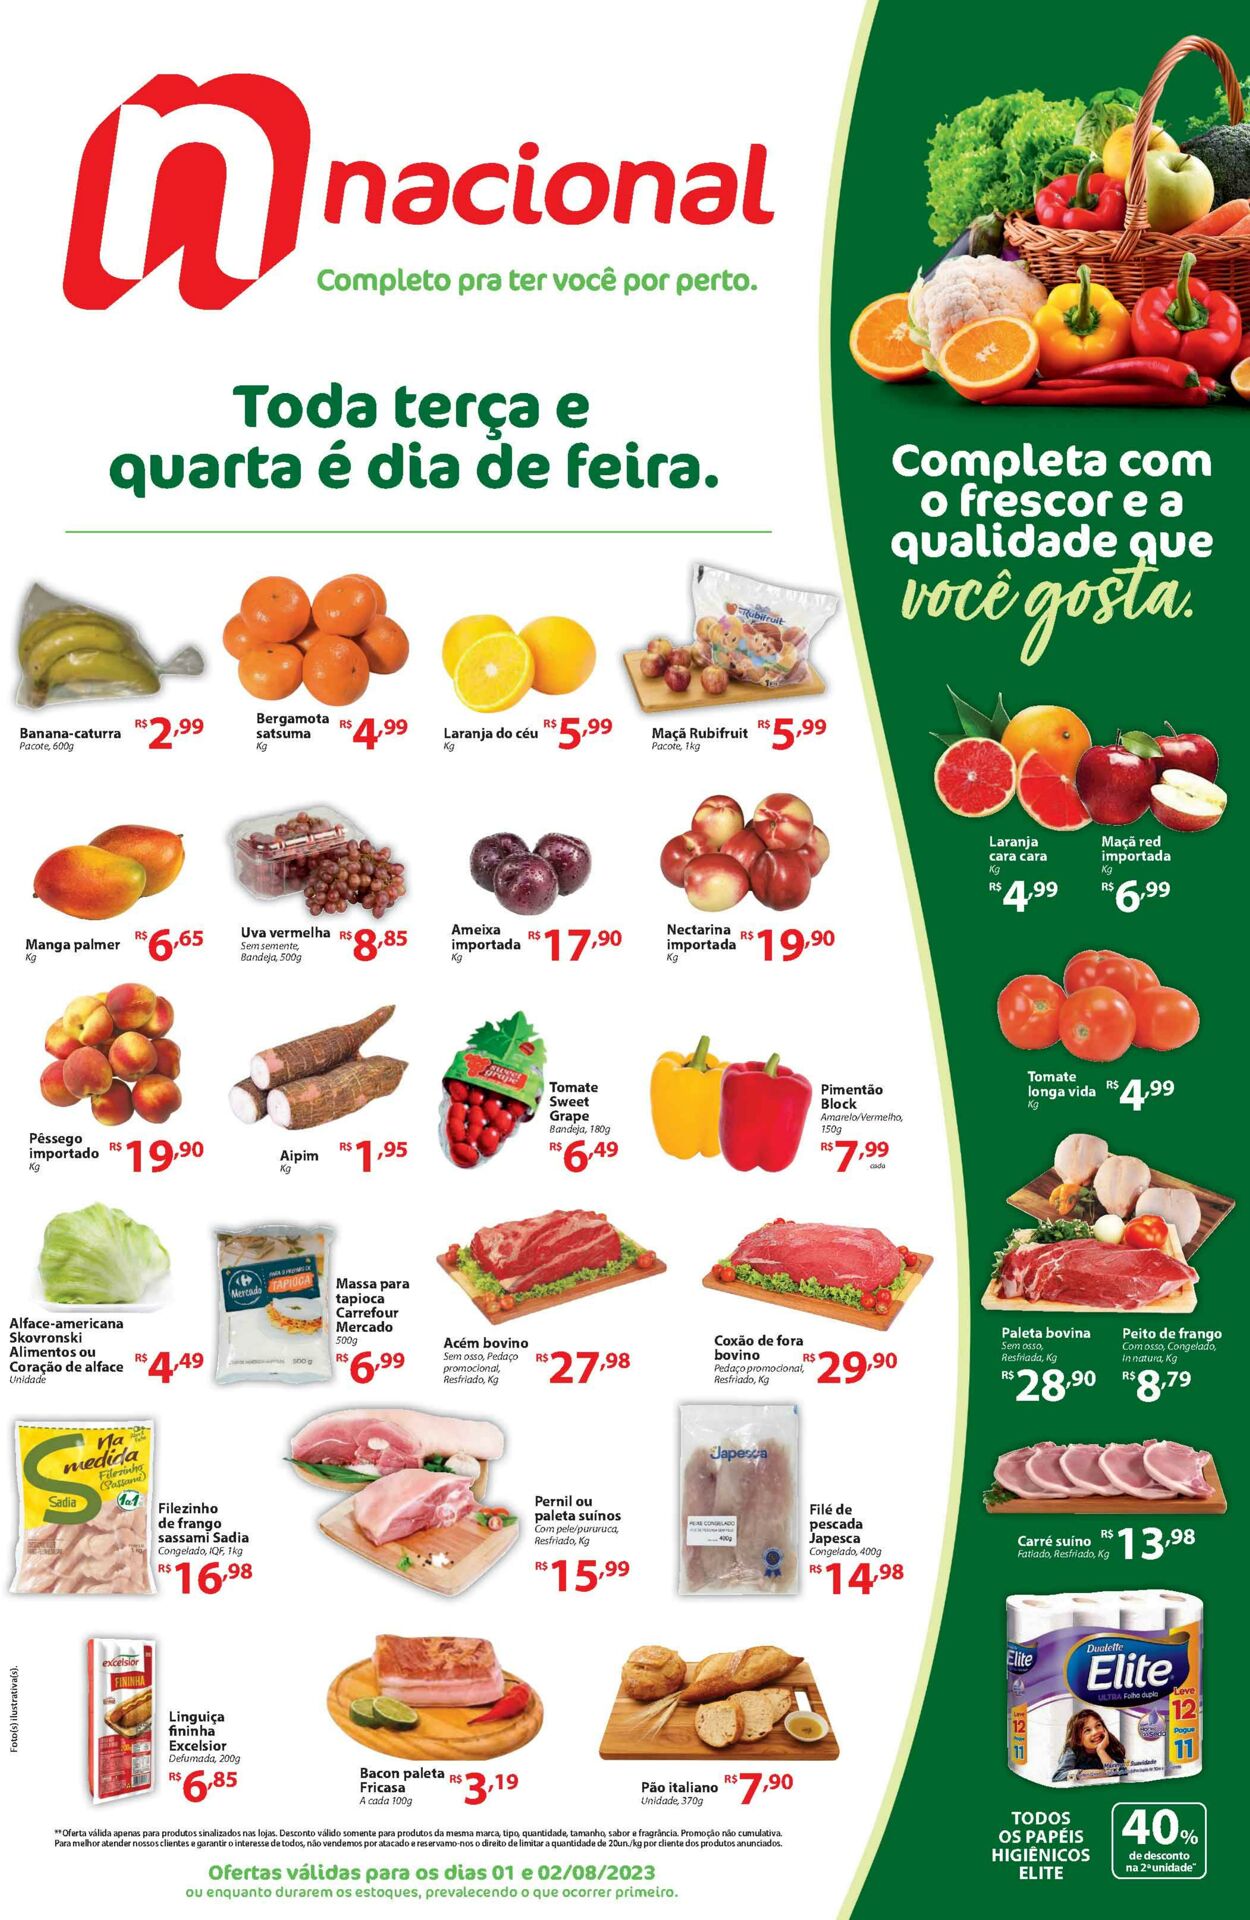 Folheto Supermercado Nacional 01.08.2023 - 02.08.2023